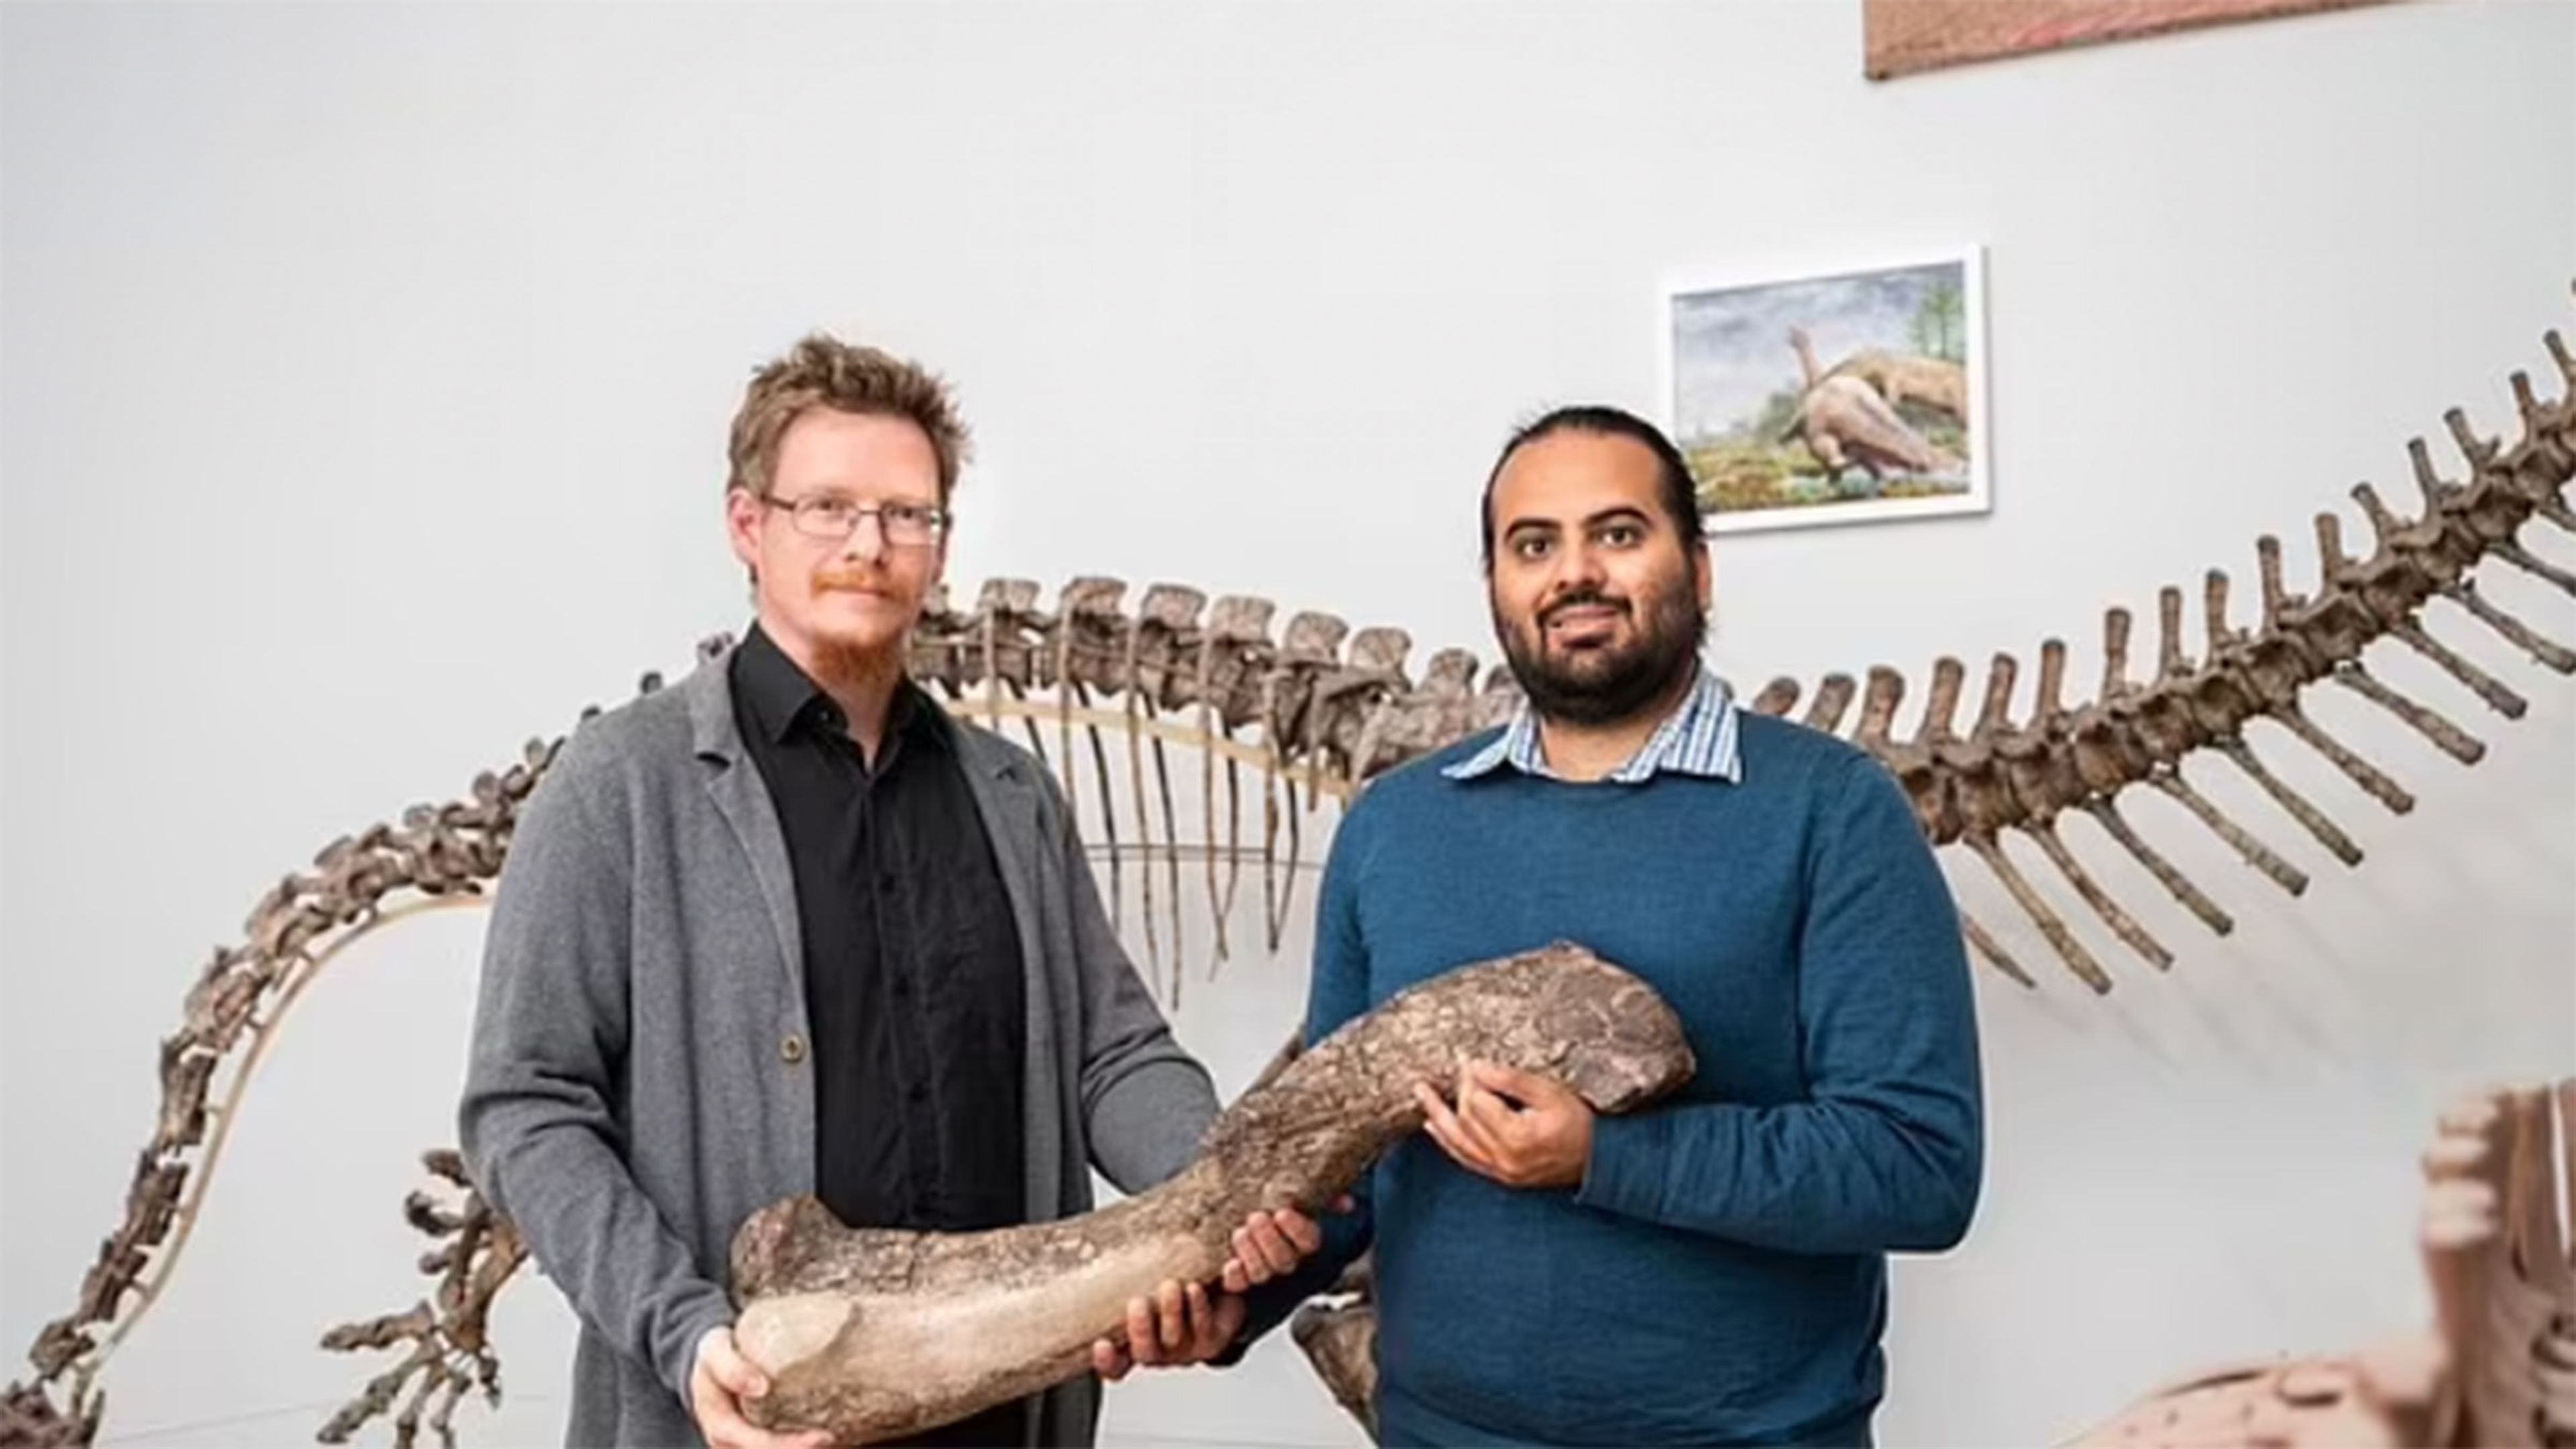 Descubren en Alemania una especie desconocida de dinosaurio que pasó inadvertida durante 100 años en un museo